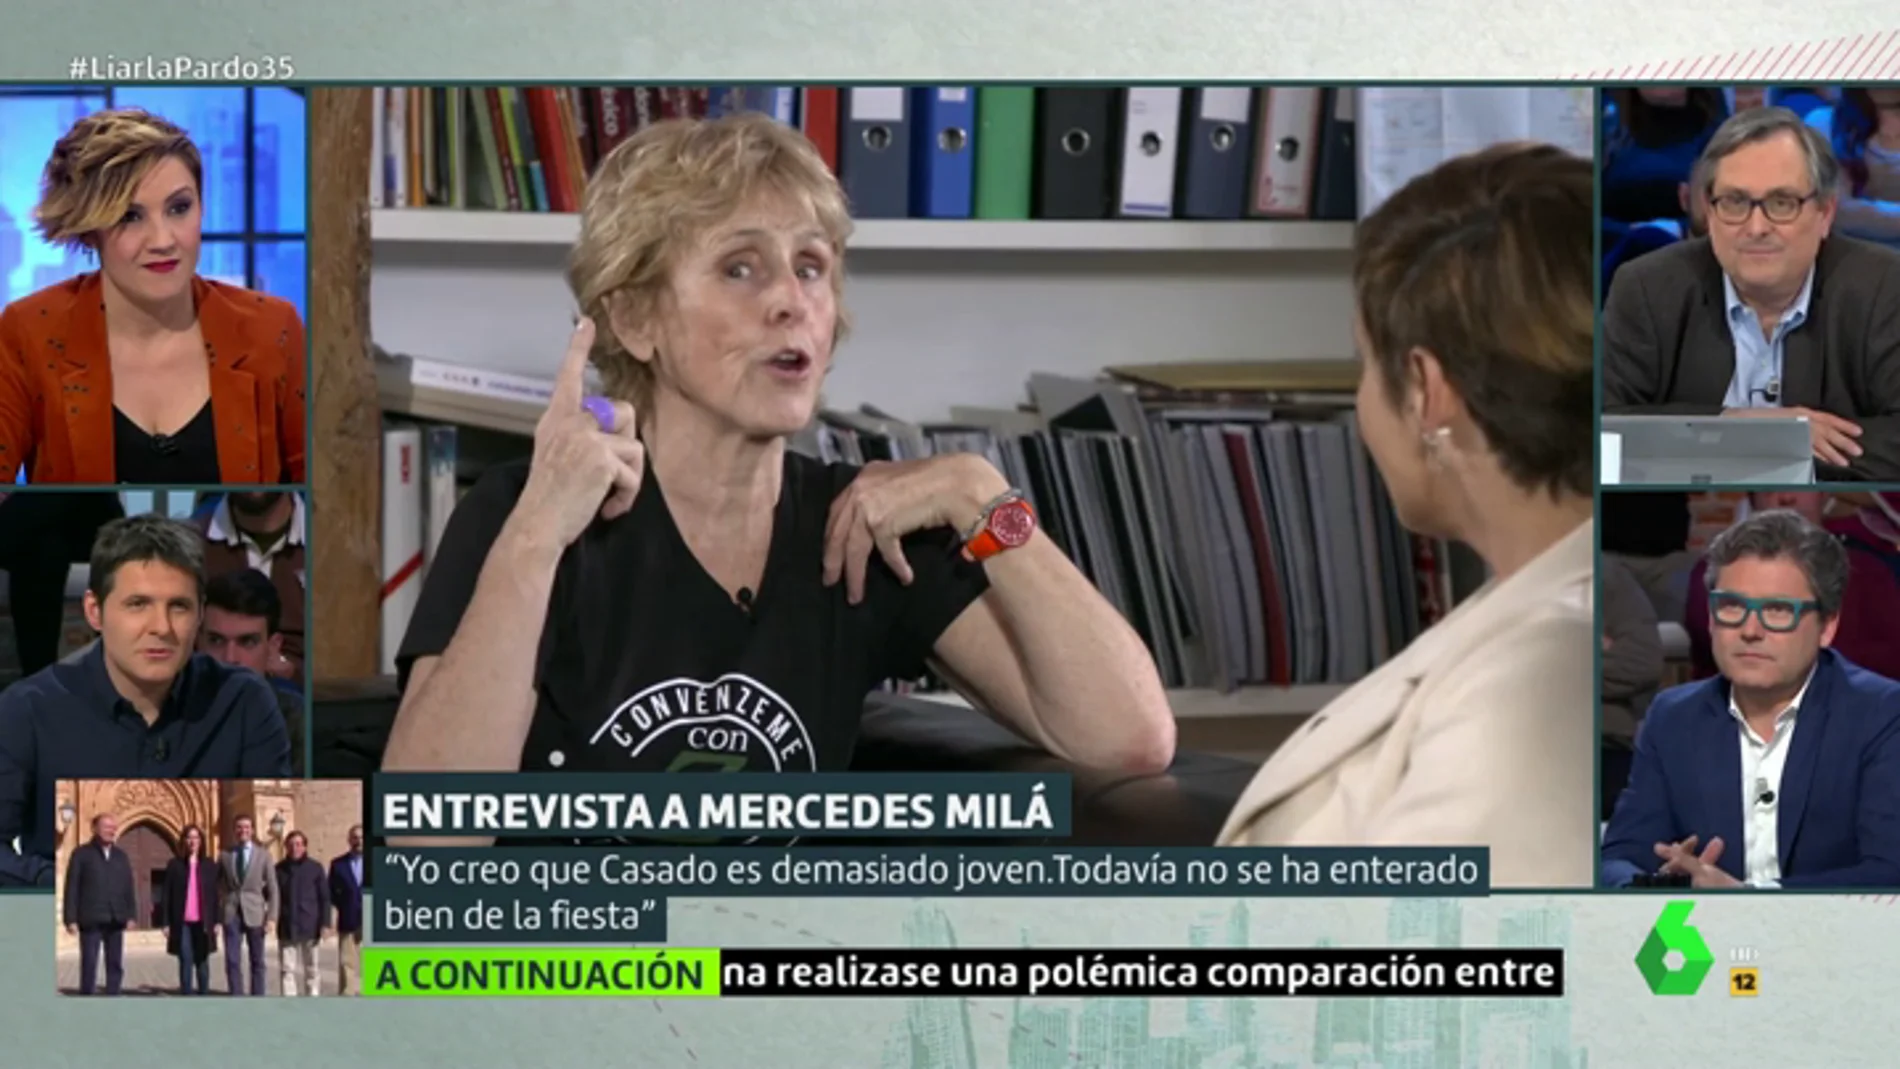 Entrevista a Mercedes Milá en Liarla Pardo